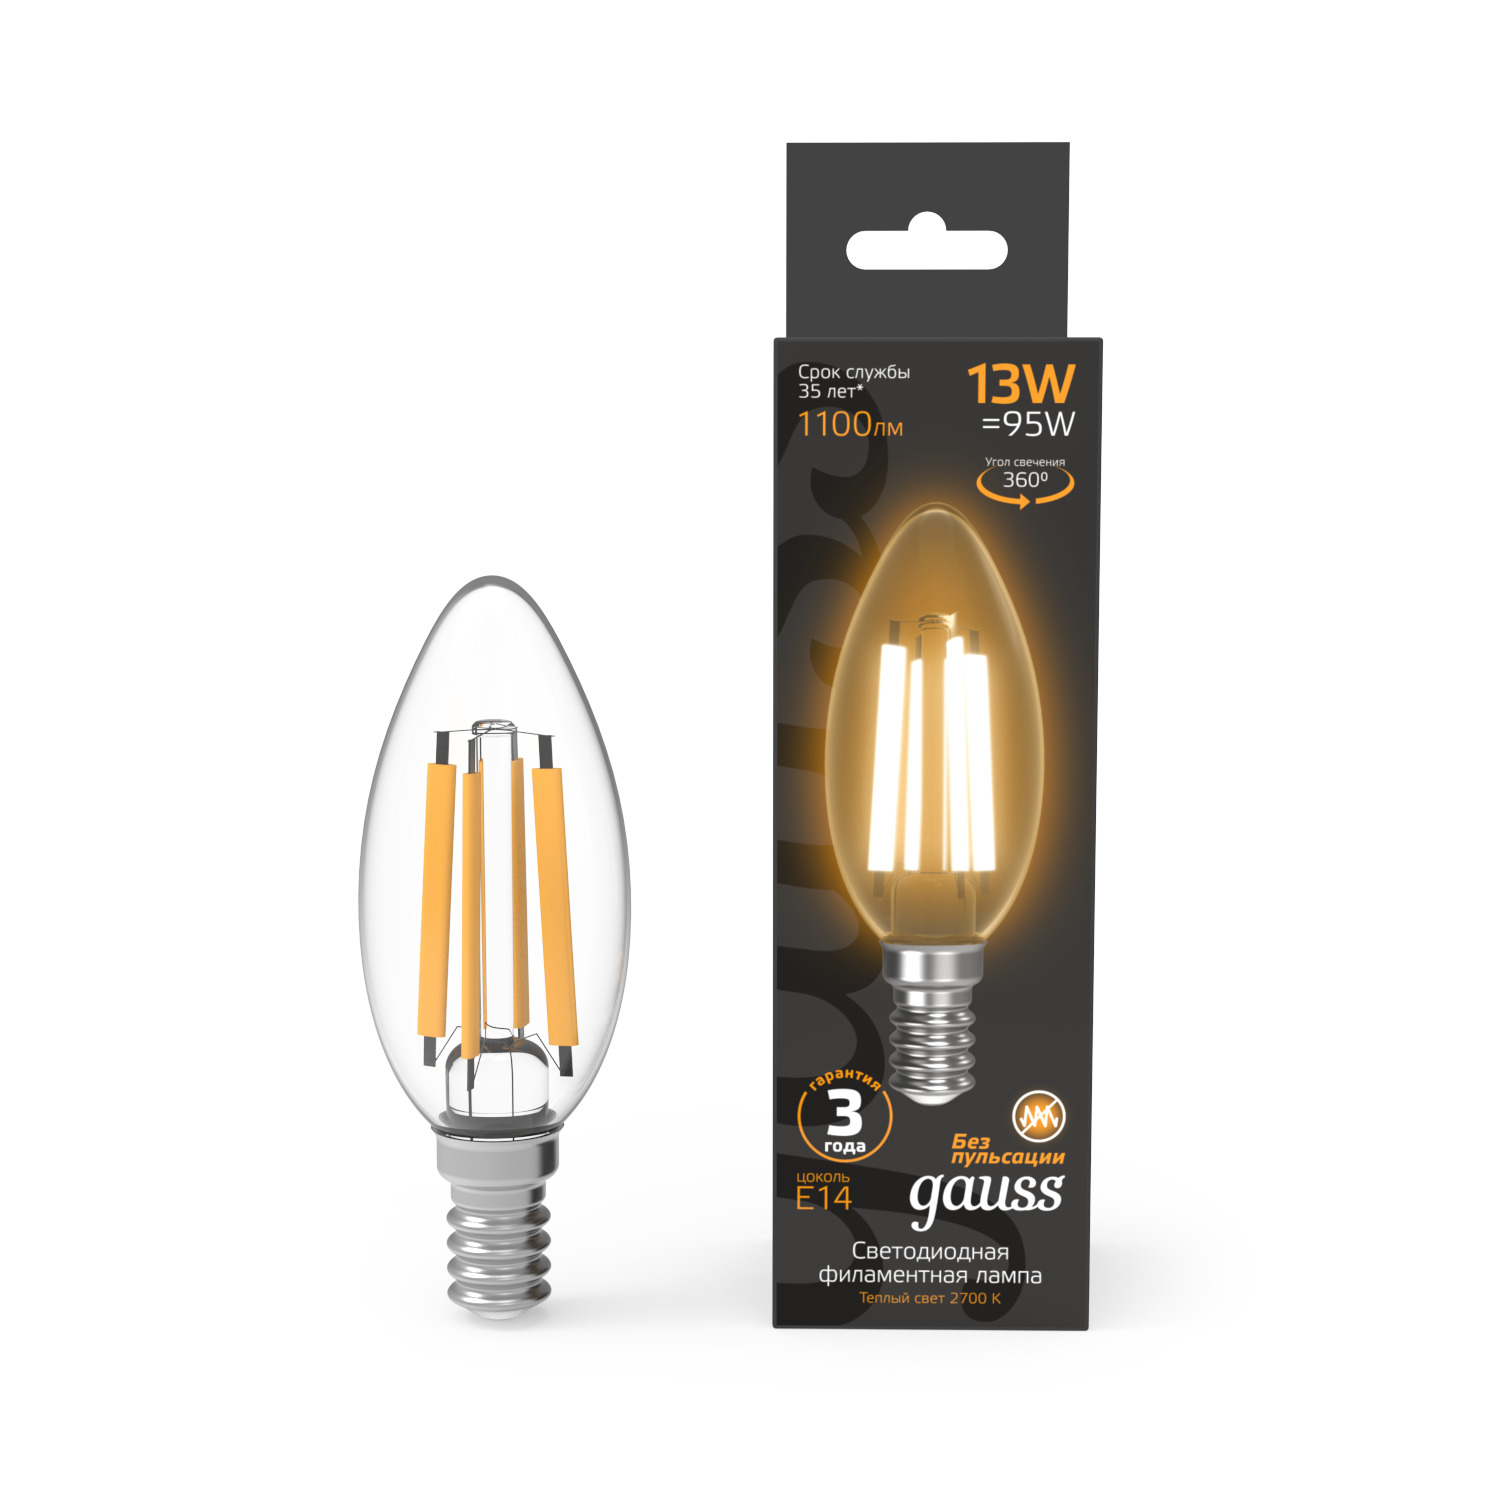 лампа gauss basic filament свеча на ветру 6 5w 480lm 2700к е14 milky led 1 10 50 Лампа Gauss Filament Свеча 13W 1100lm 2700К Е14 LED 1/10/50